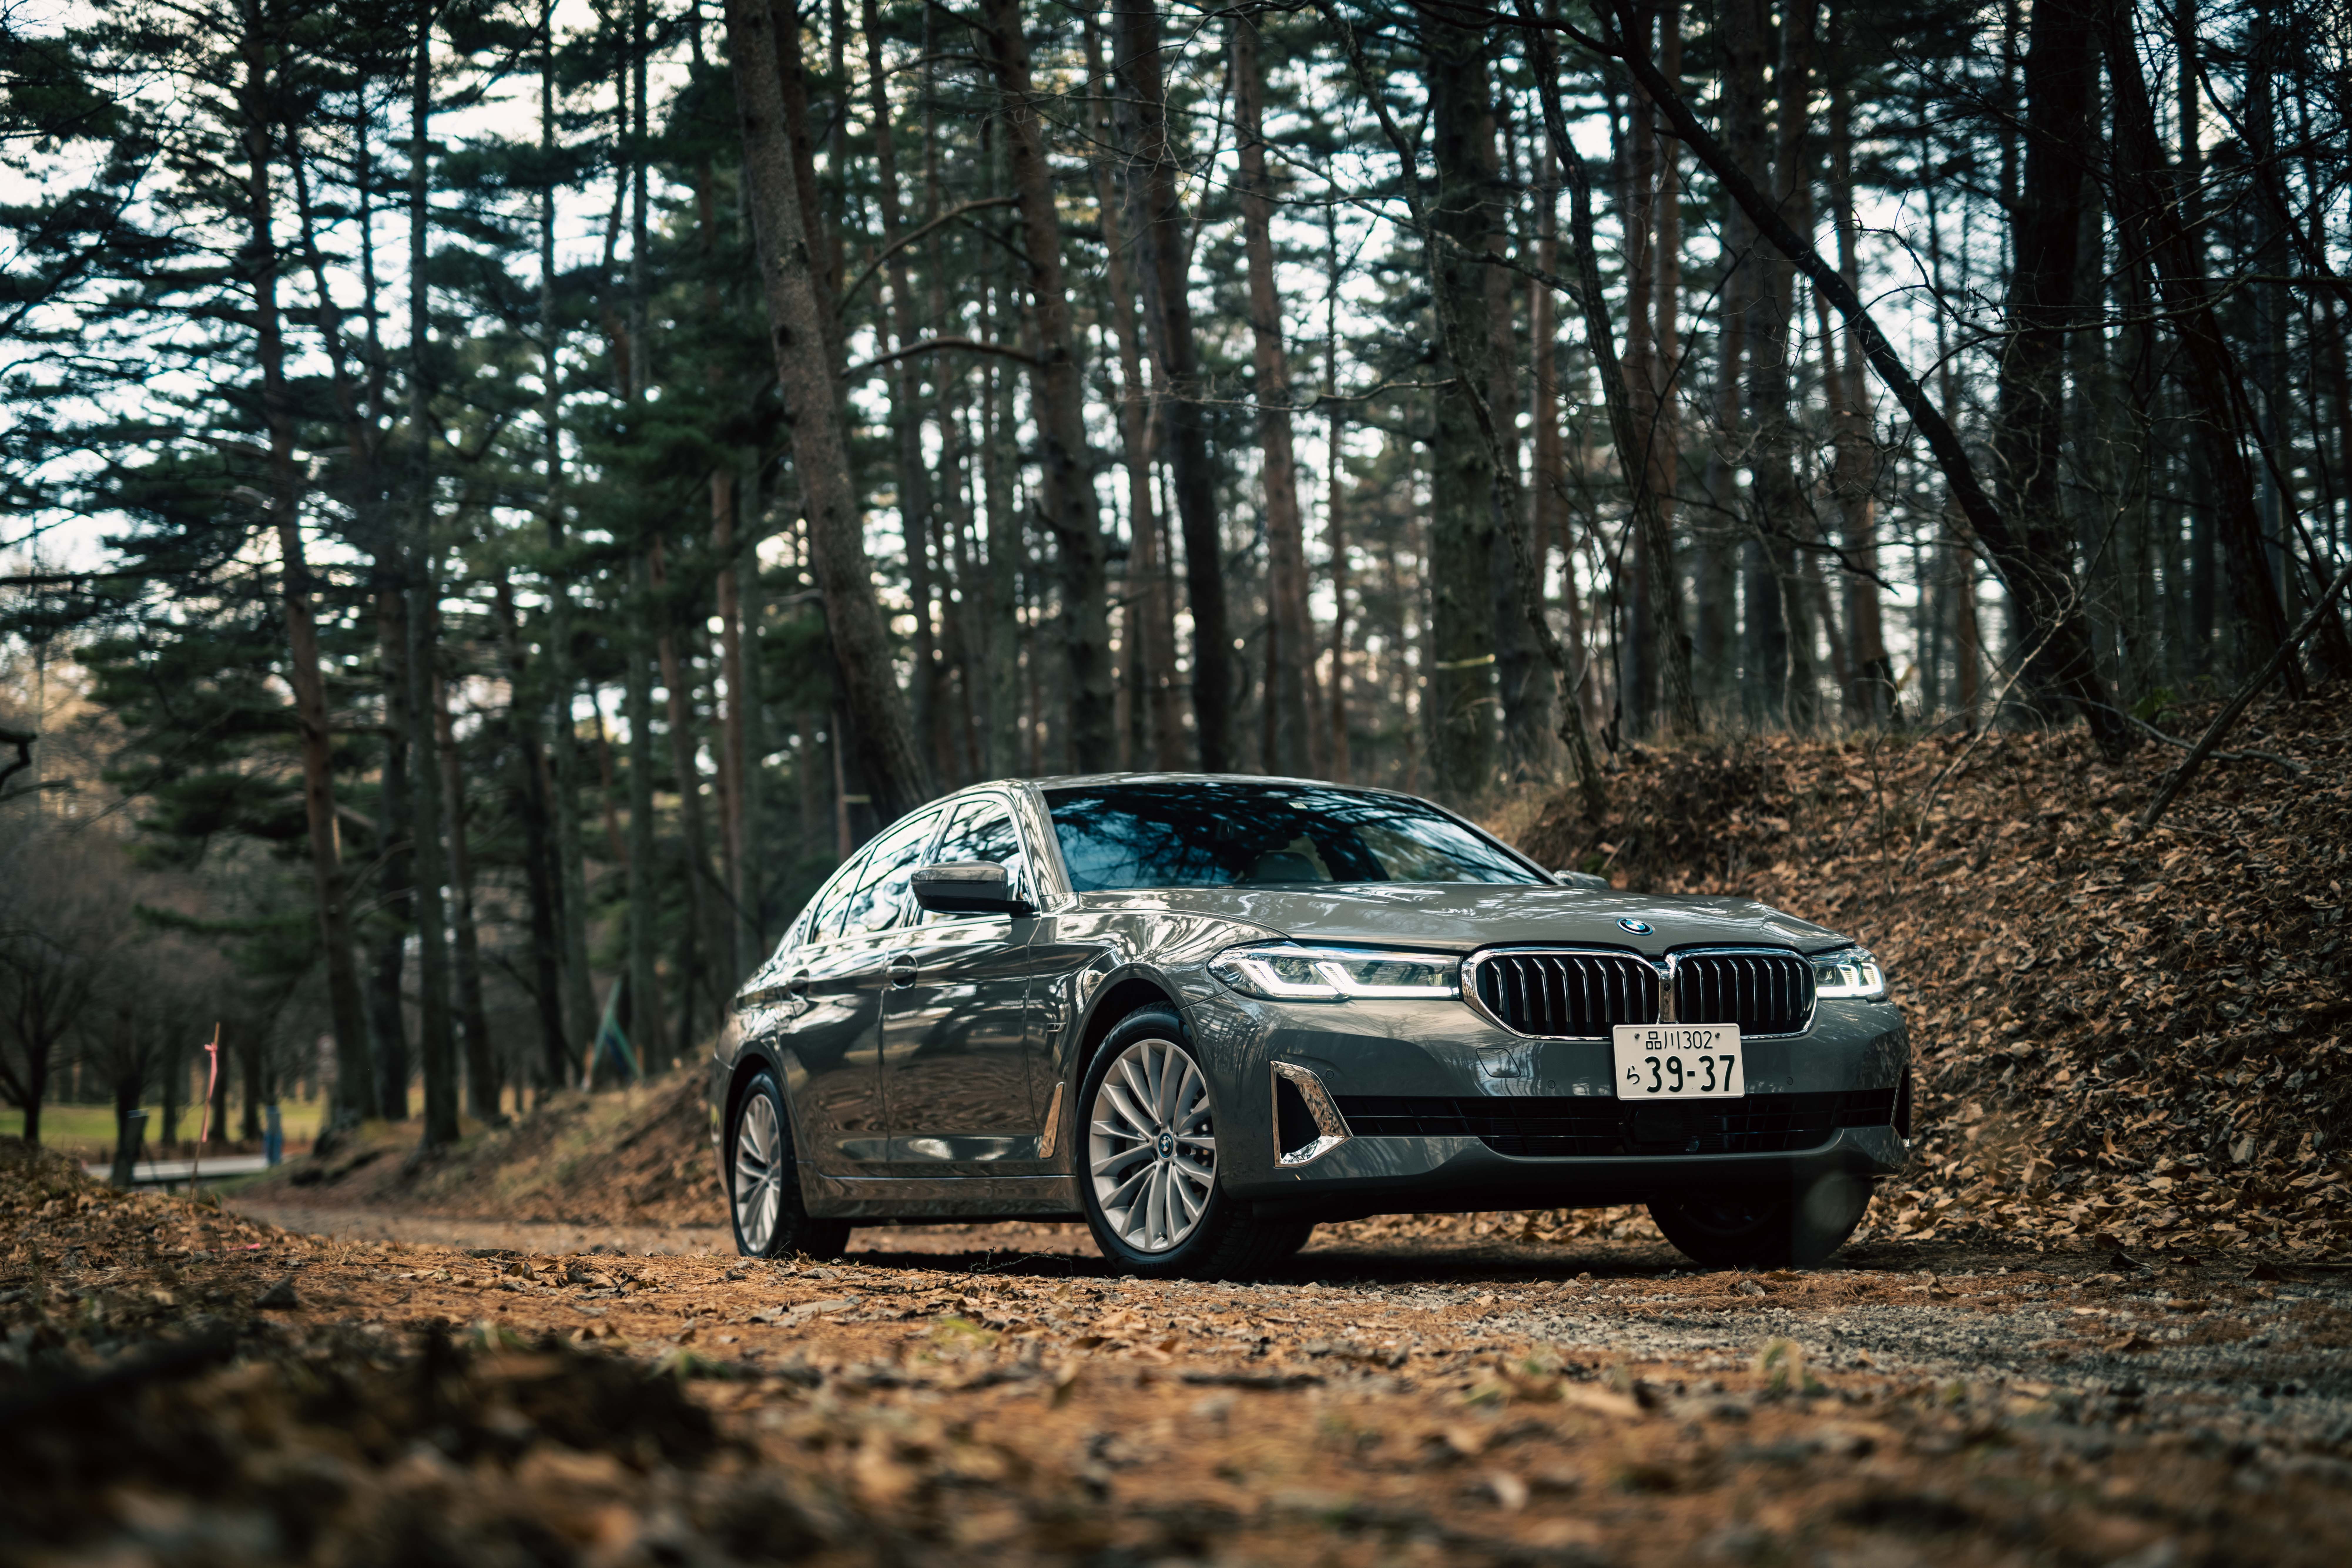 伝統のセダン、魅力は褪せない──新型BMW 530e Luxury Edition Joy+試乗記